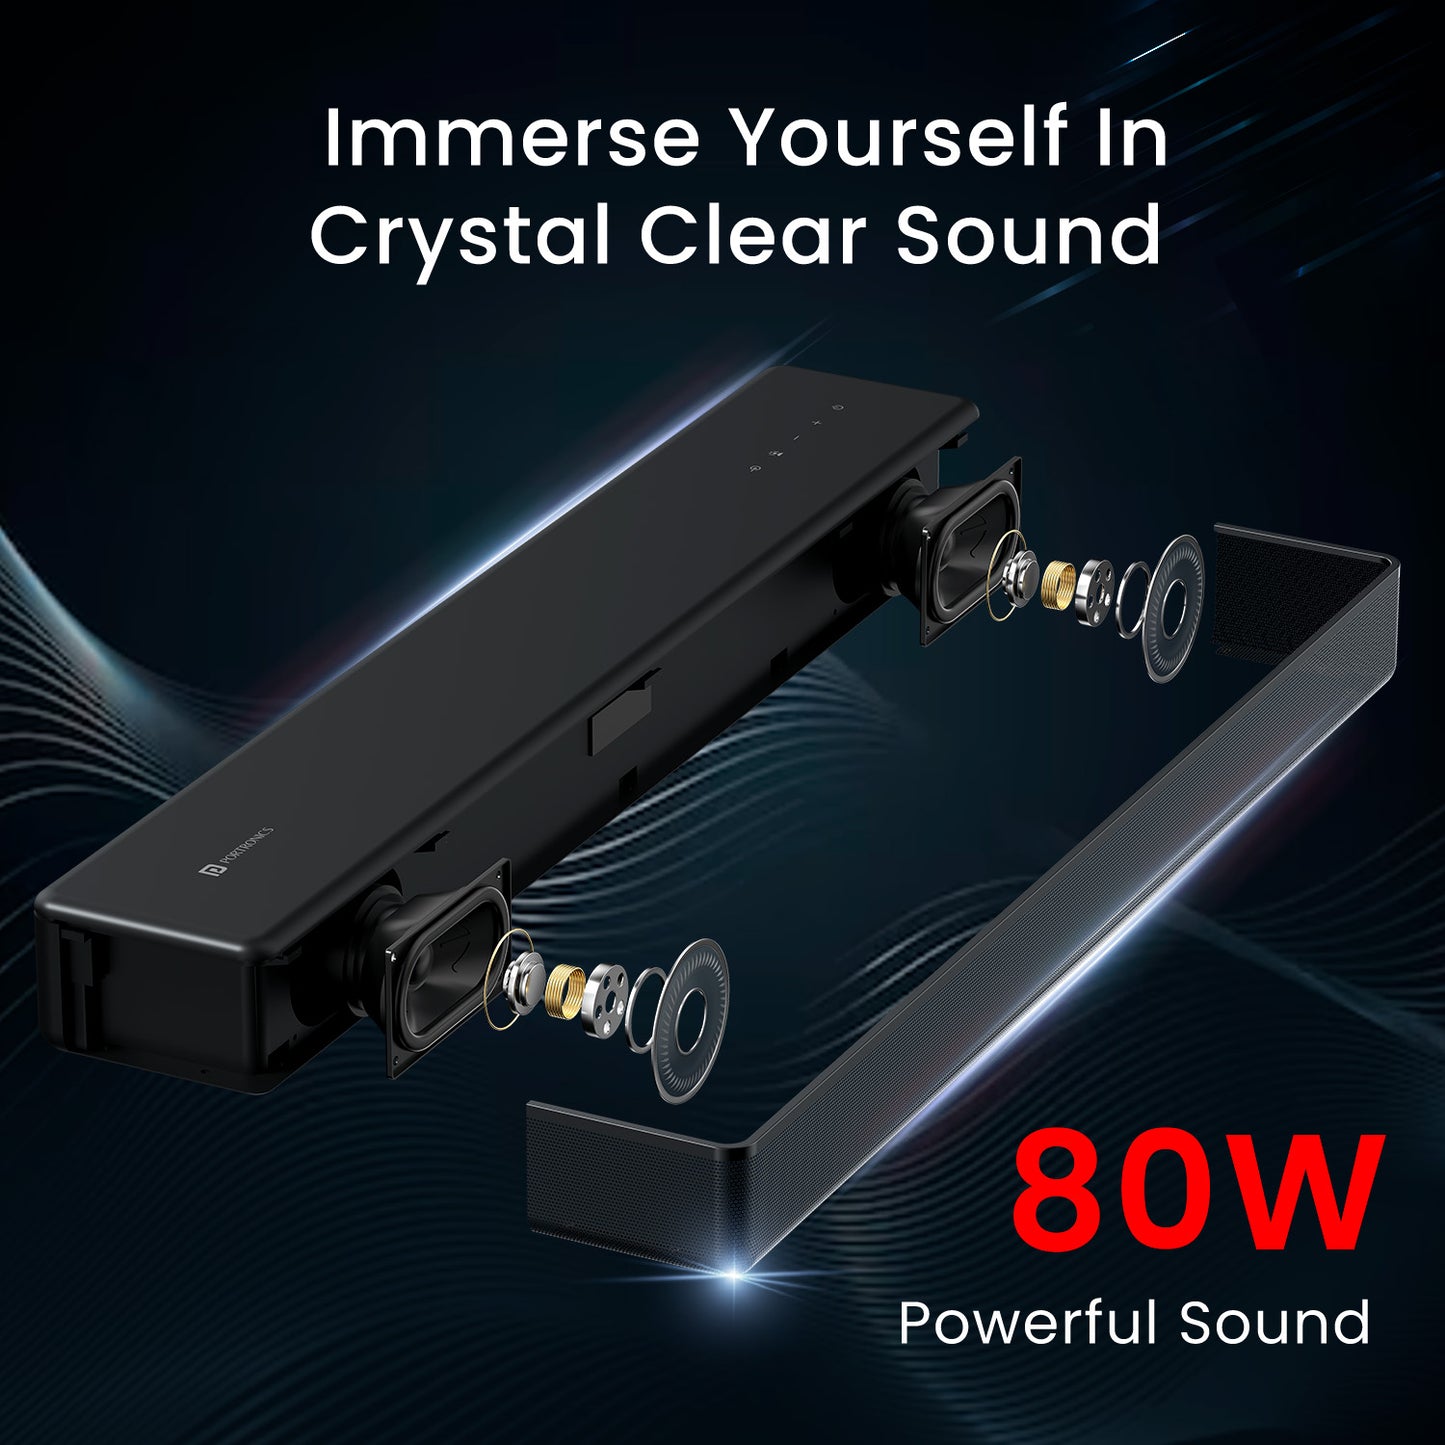 Portronics sound slick 8 powerful 80W wireless soundbar for home with crystal clear sound. Black